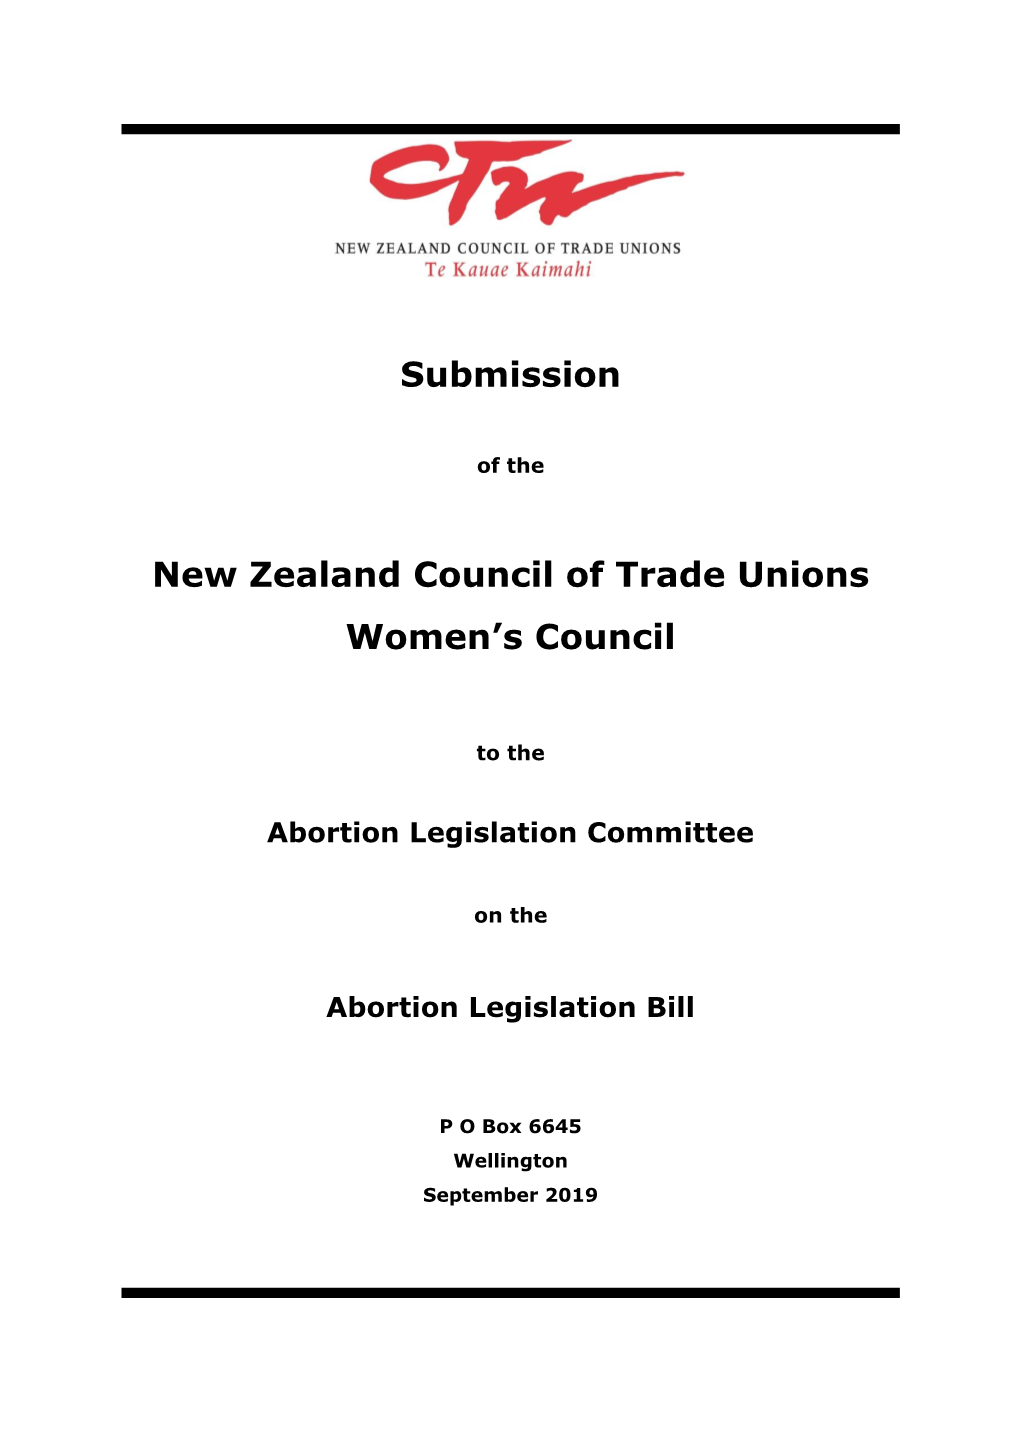 Abortion Legislation Bill 2019